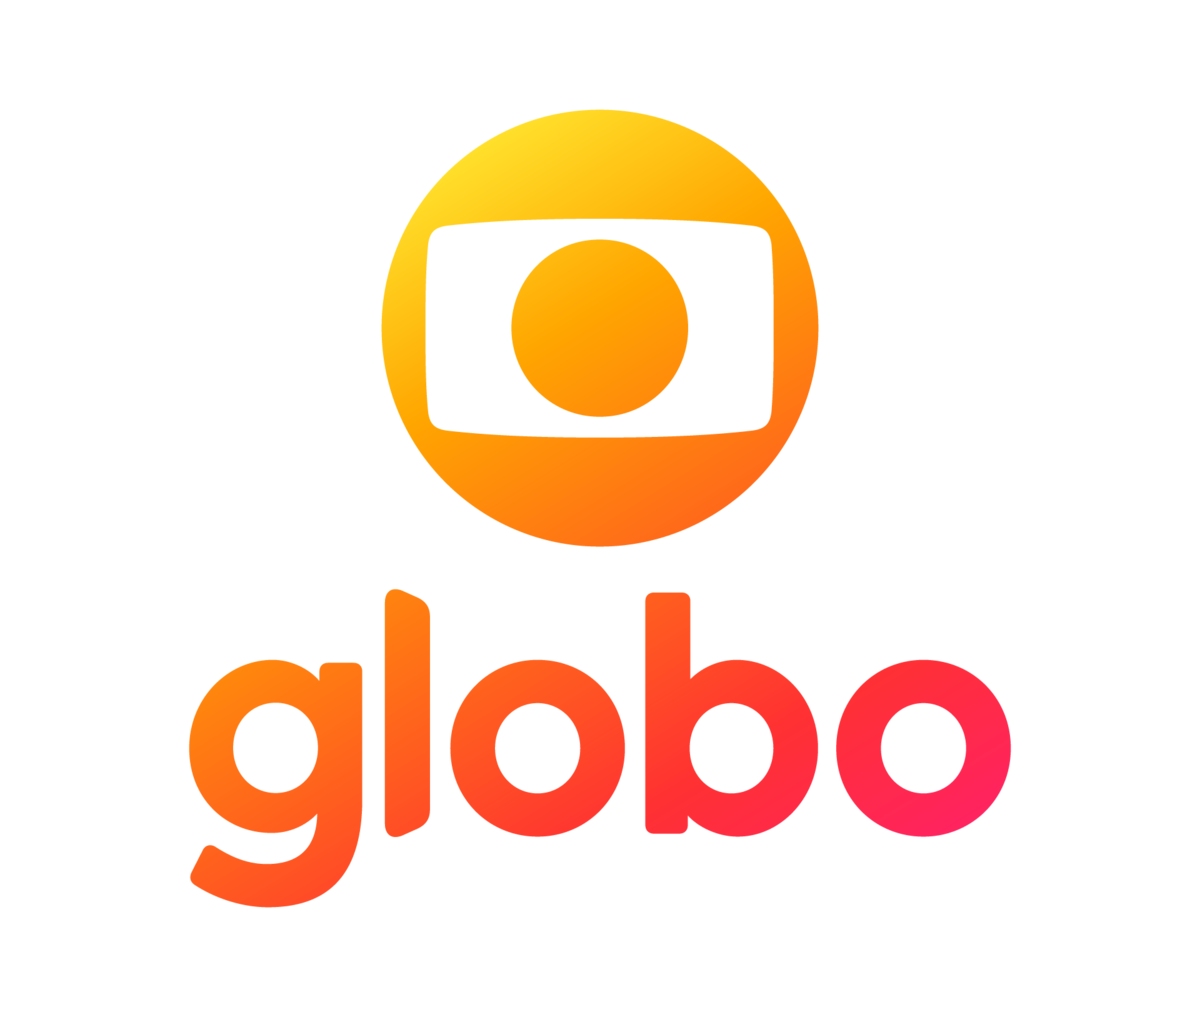 Site oficial da Rede Globo